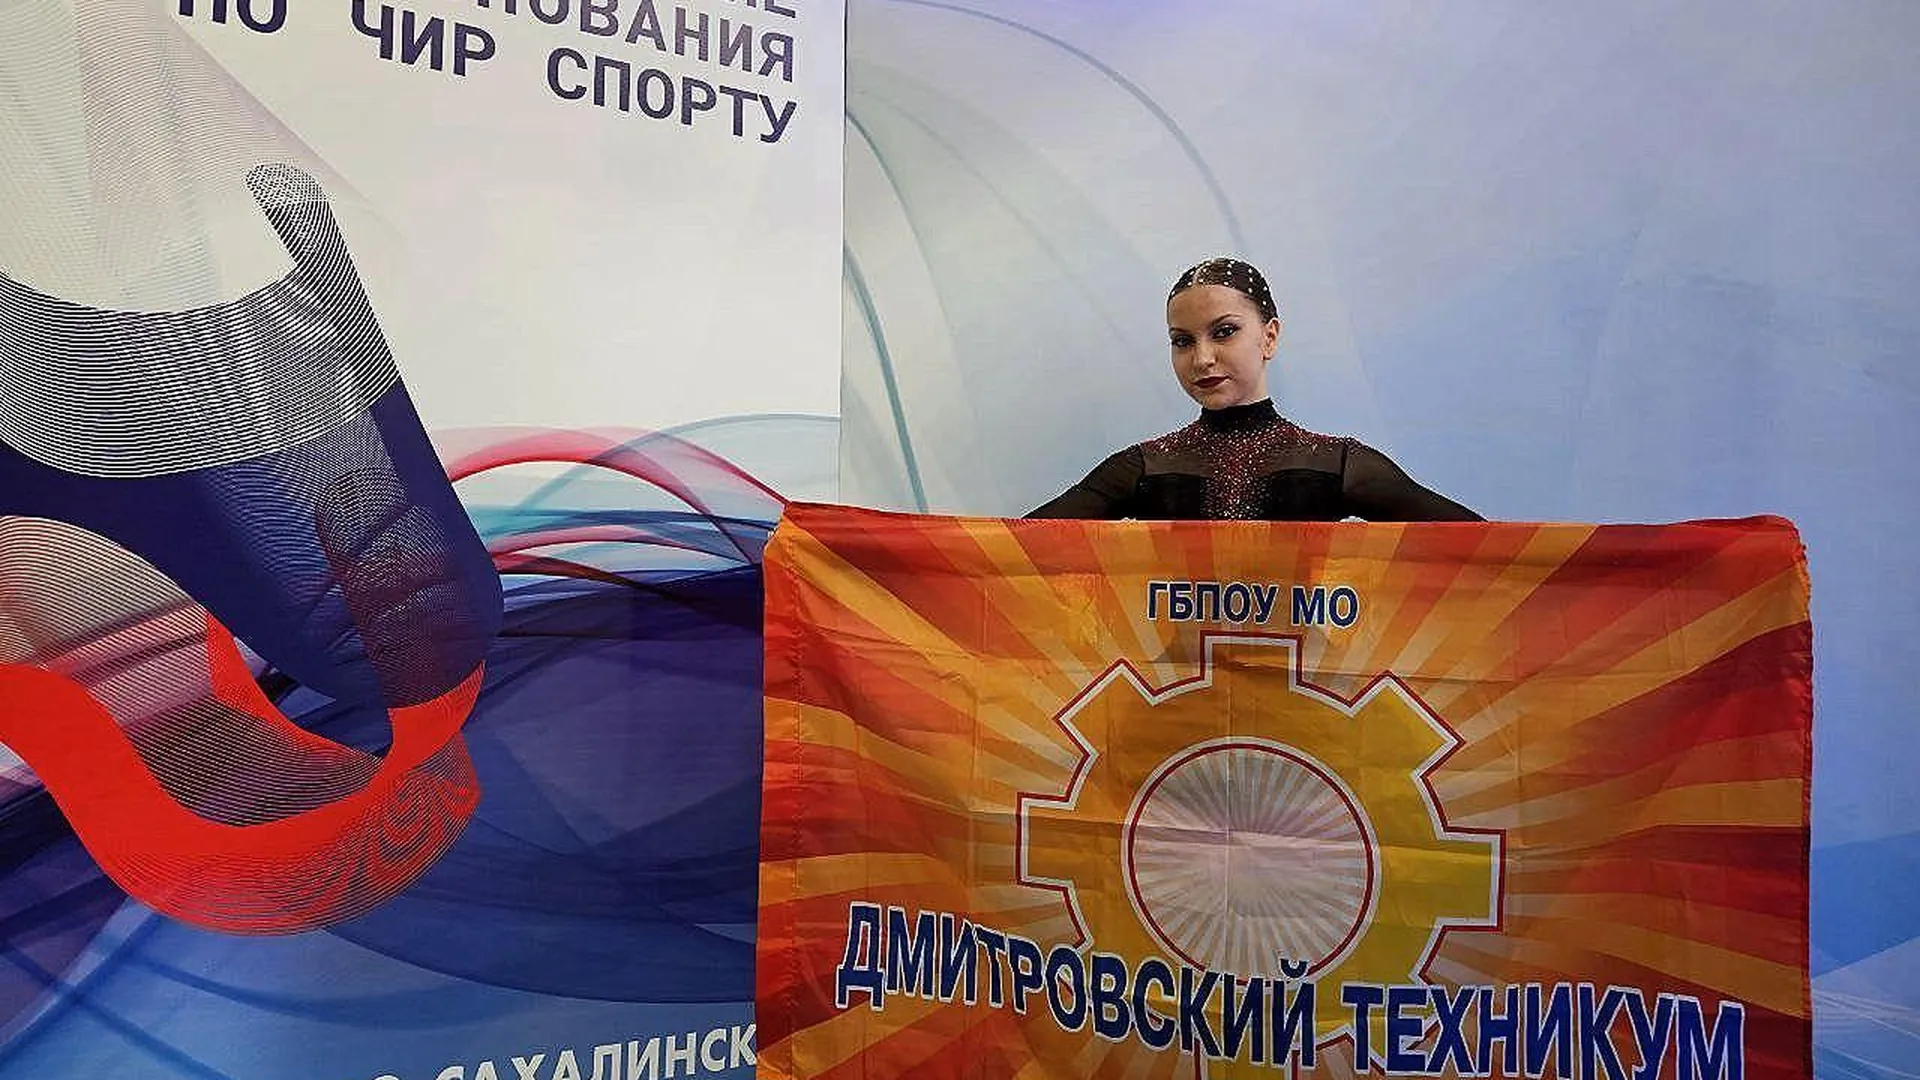 Студентка из Дмитрова стала бронзовым призером всероссийских соревнований по чир спорту